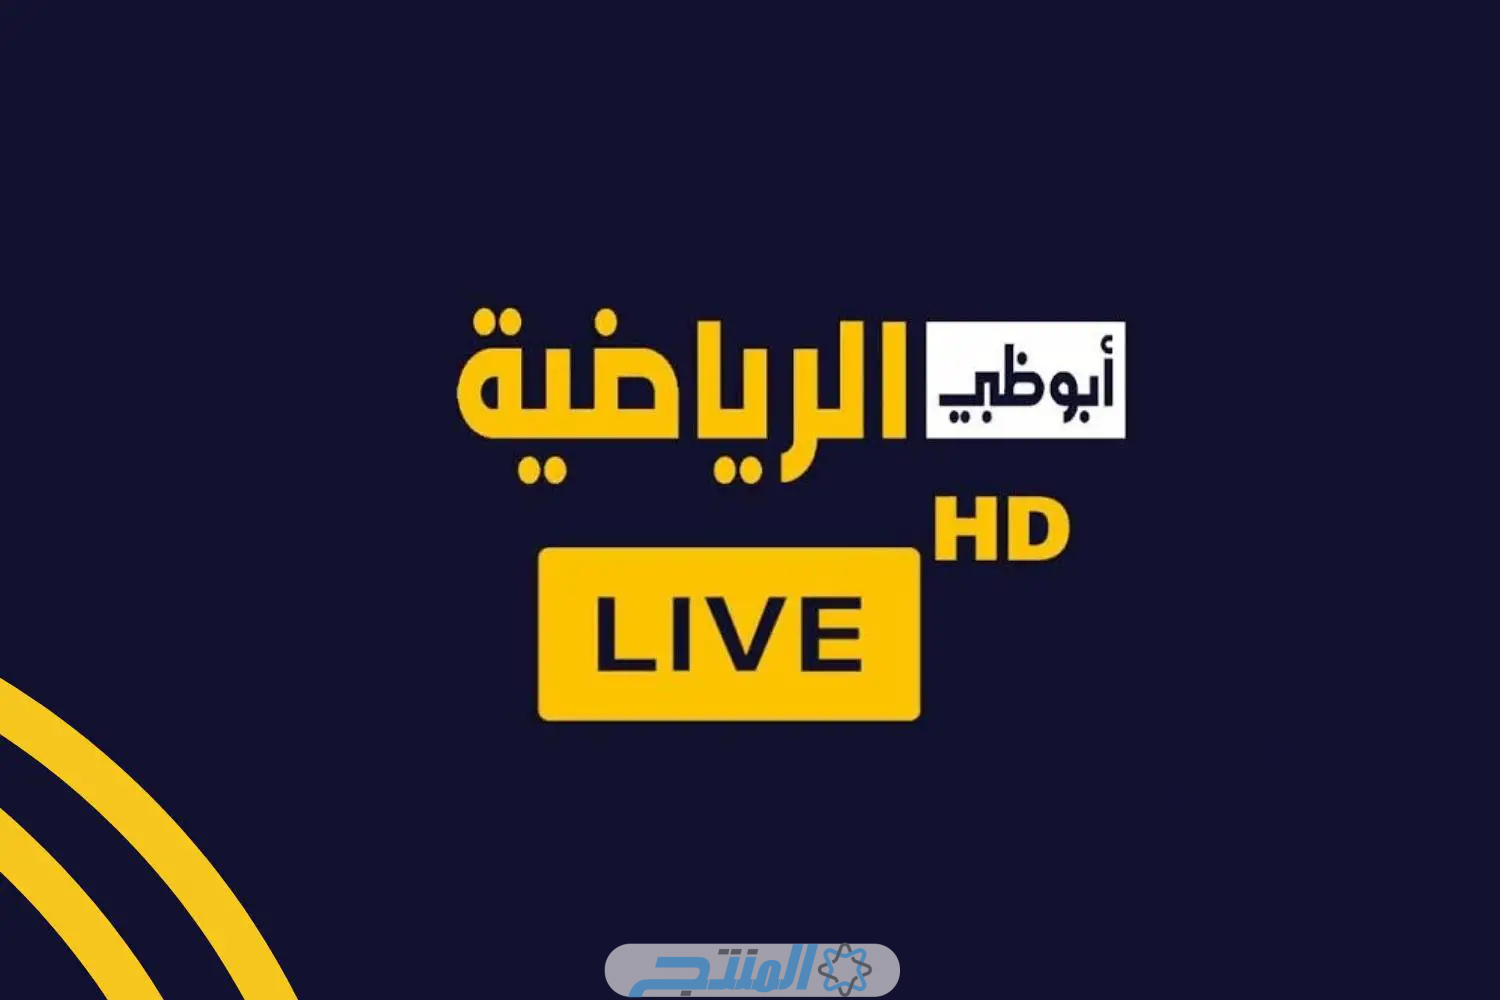 تـردد قناة أبو ظبي الرياضية على هوت بيرد